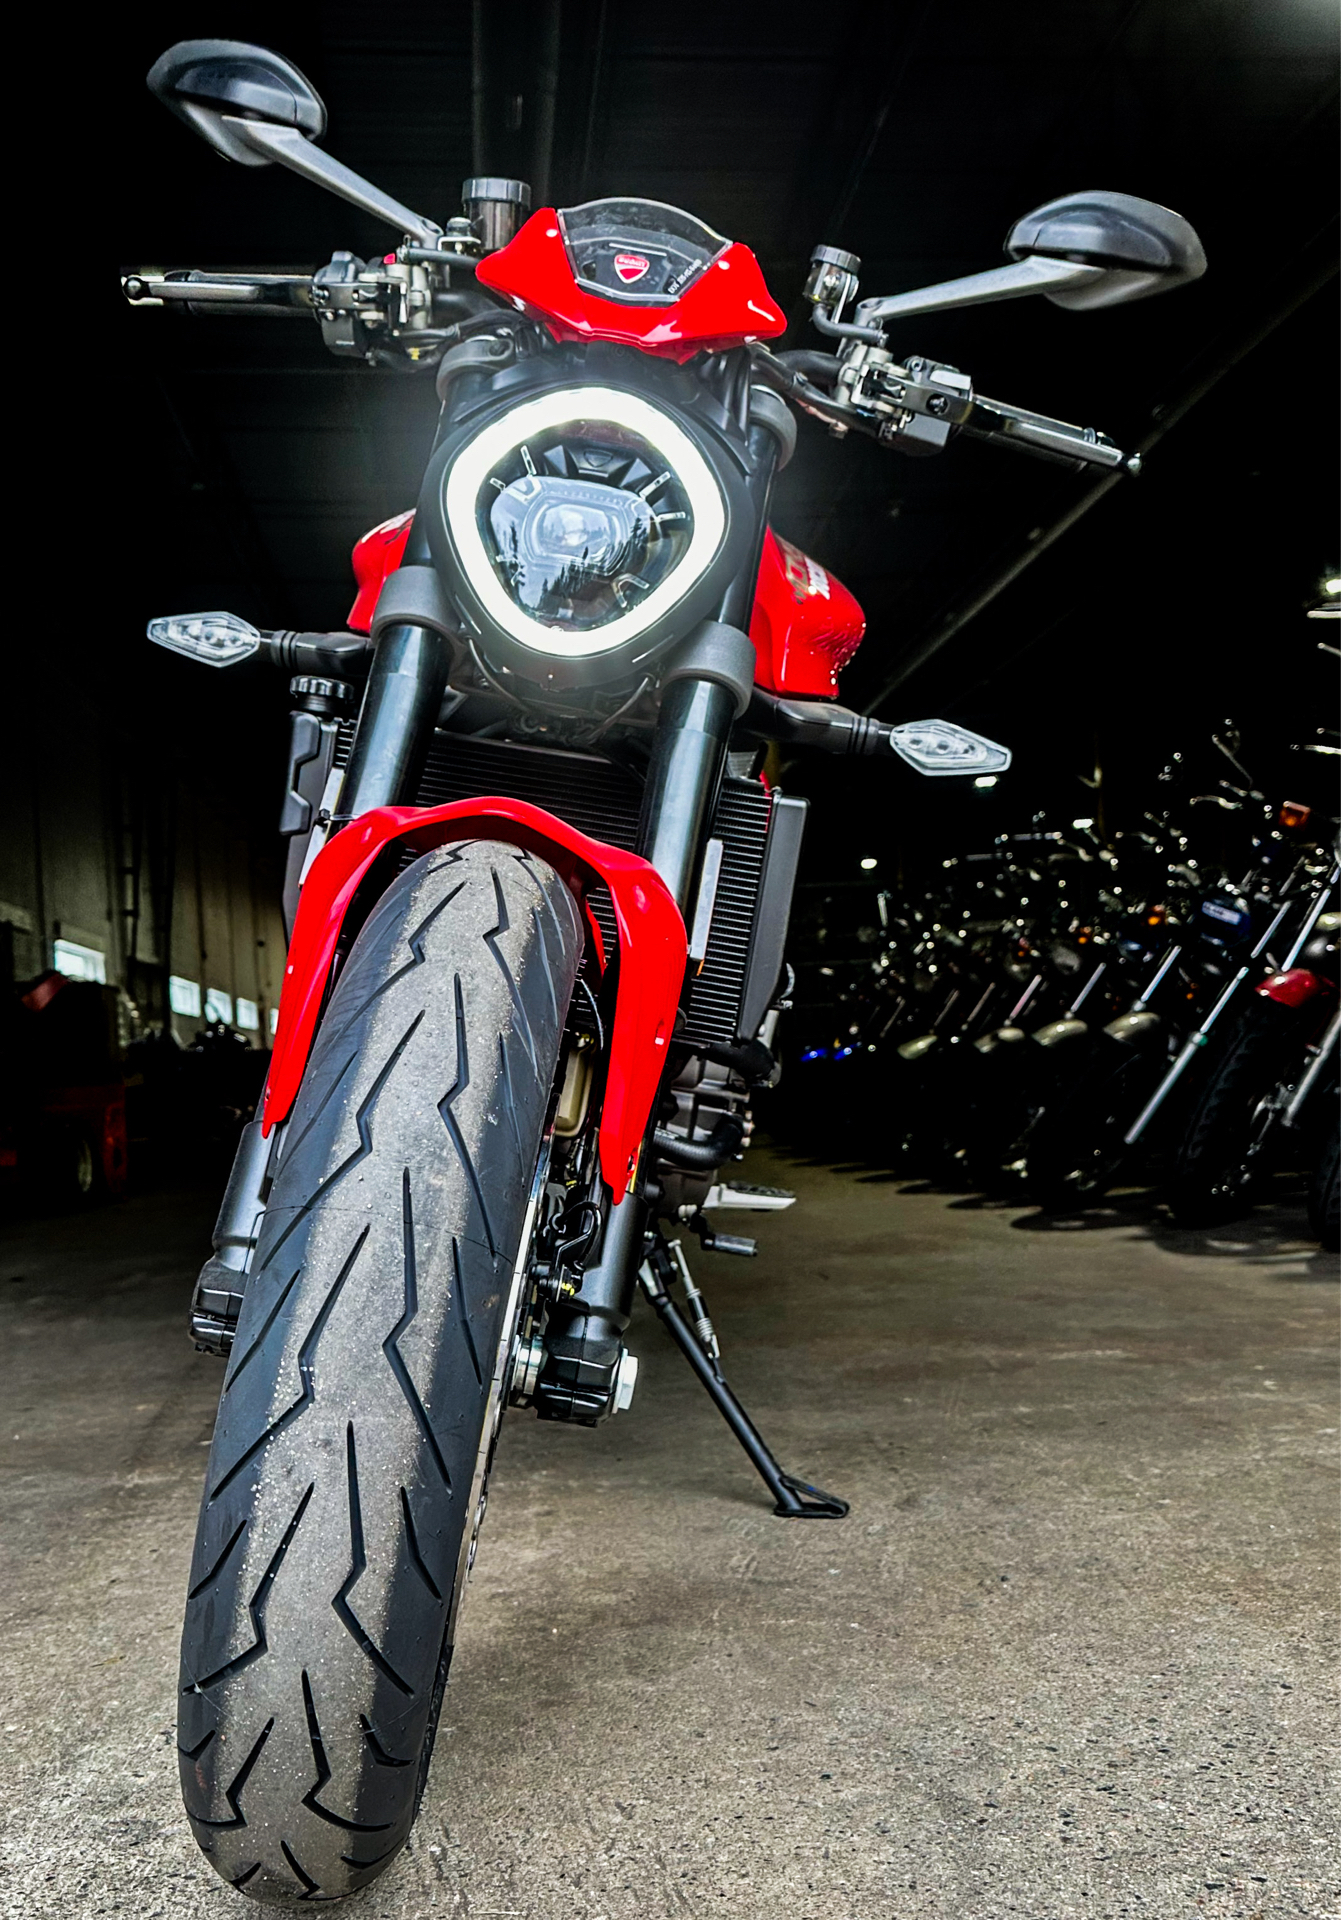 2024 Ducati Monster + in Foxboro, Massachusetts - Photo 8